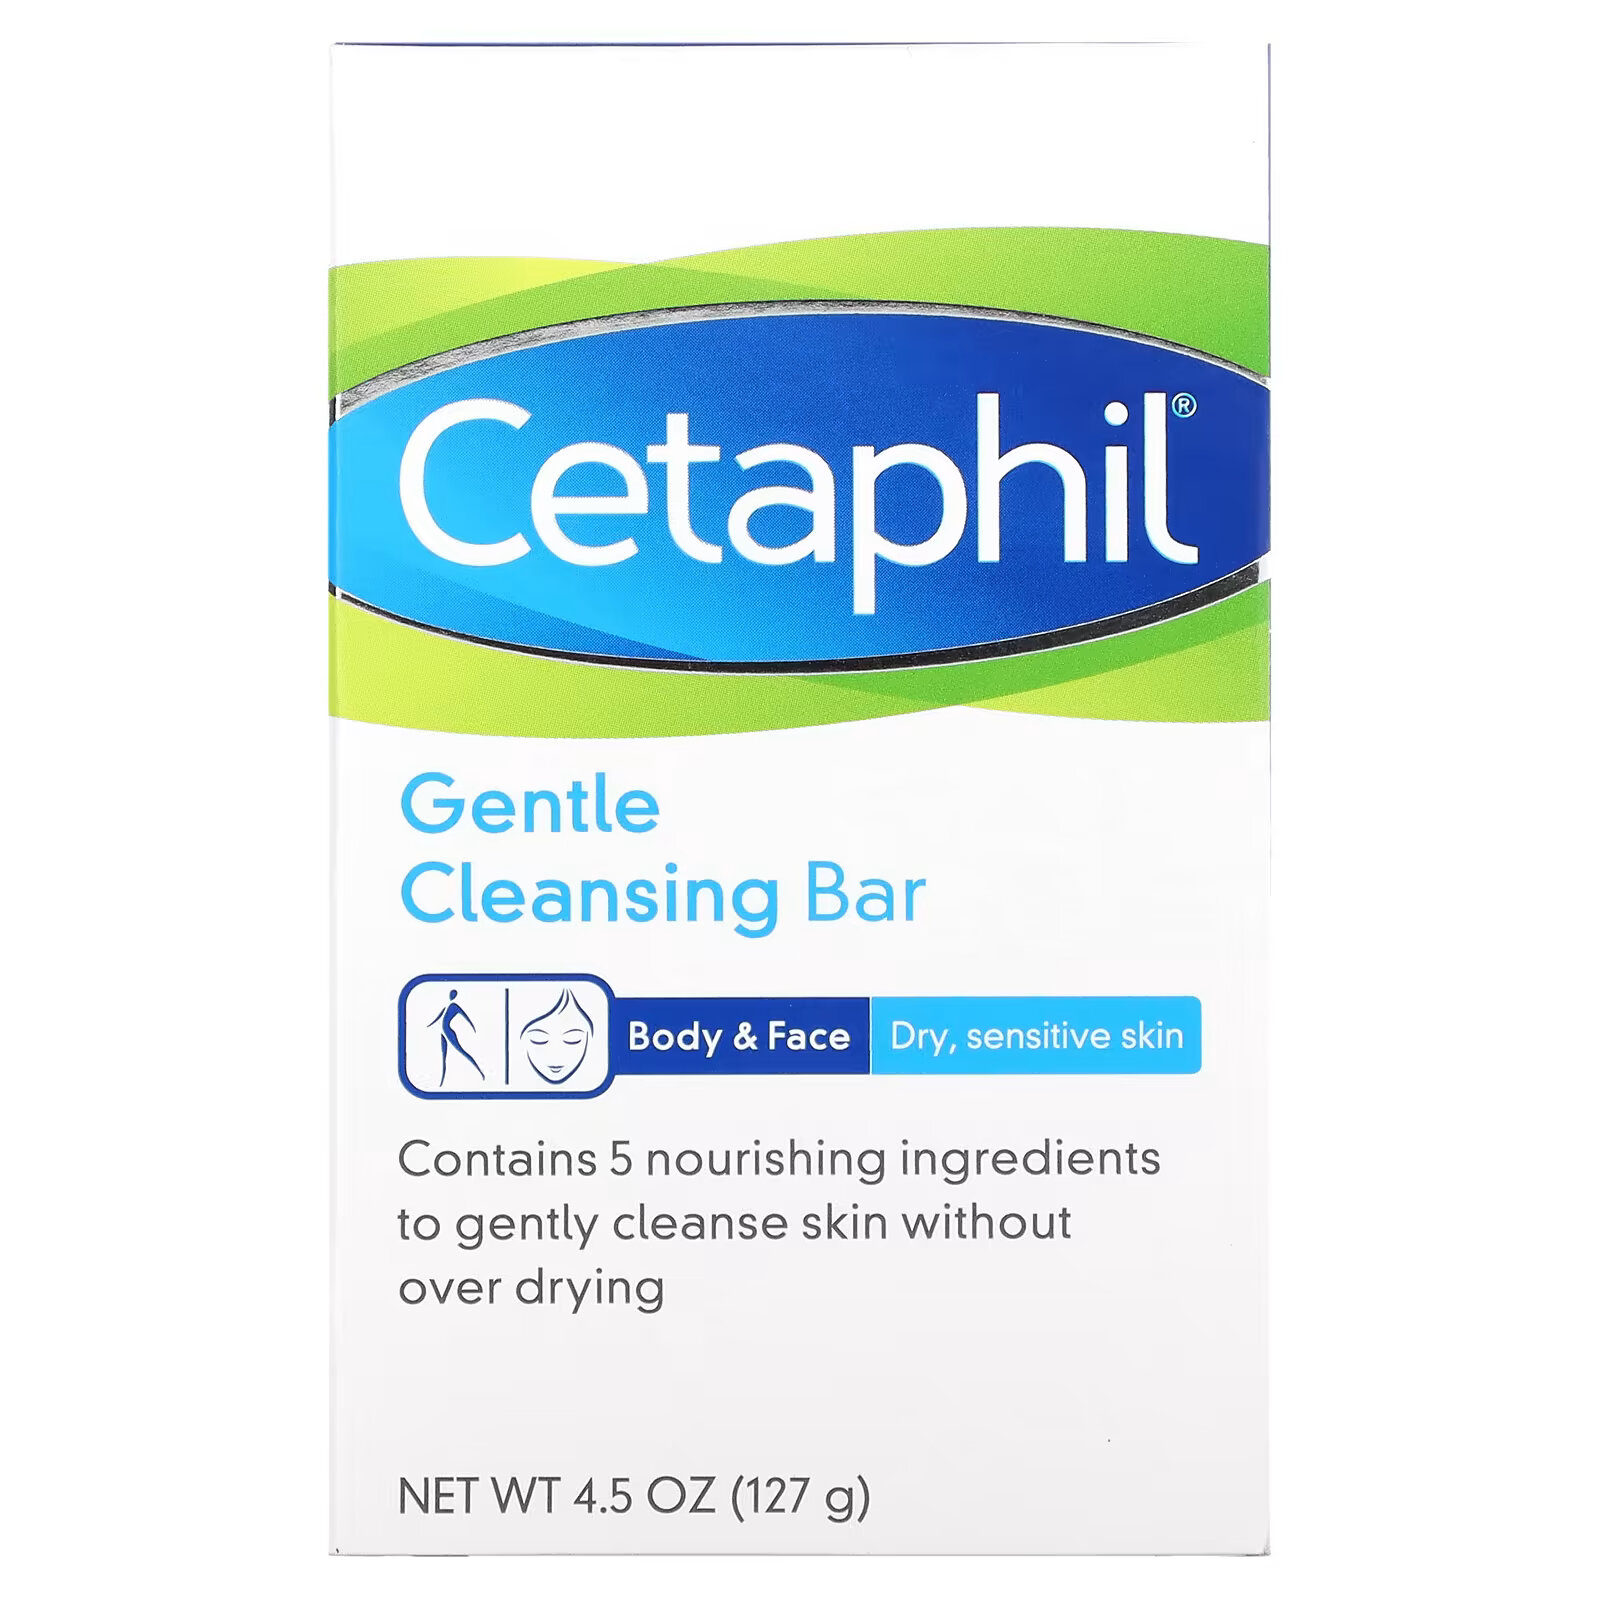 Мягкое очищающее мыло Cetaphil, 127 г дерматологический хлеб 127 гр cetaphil